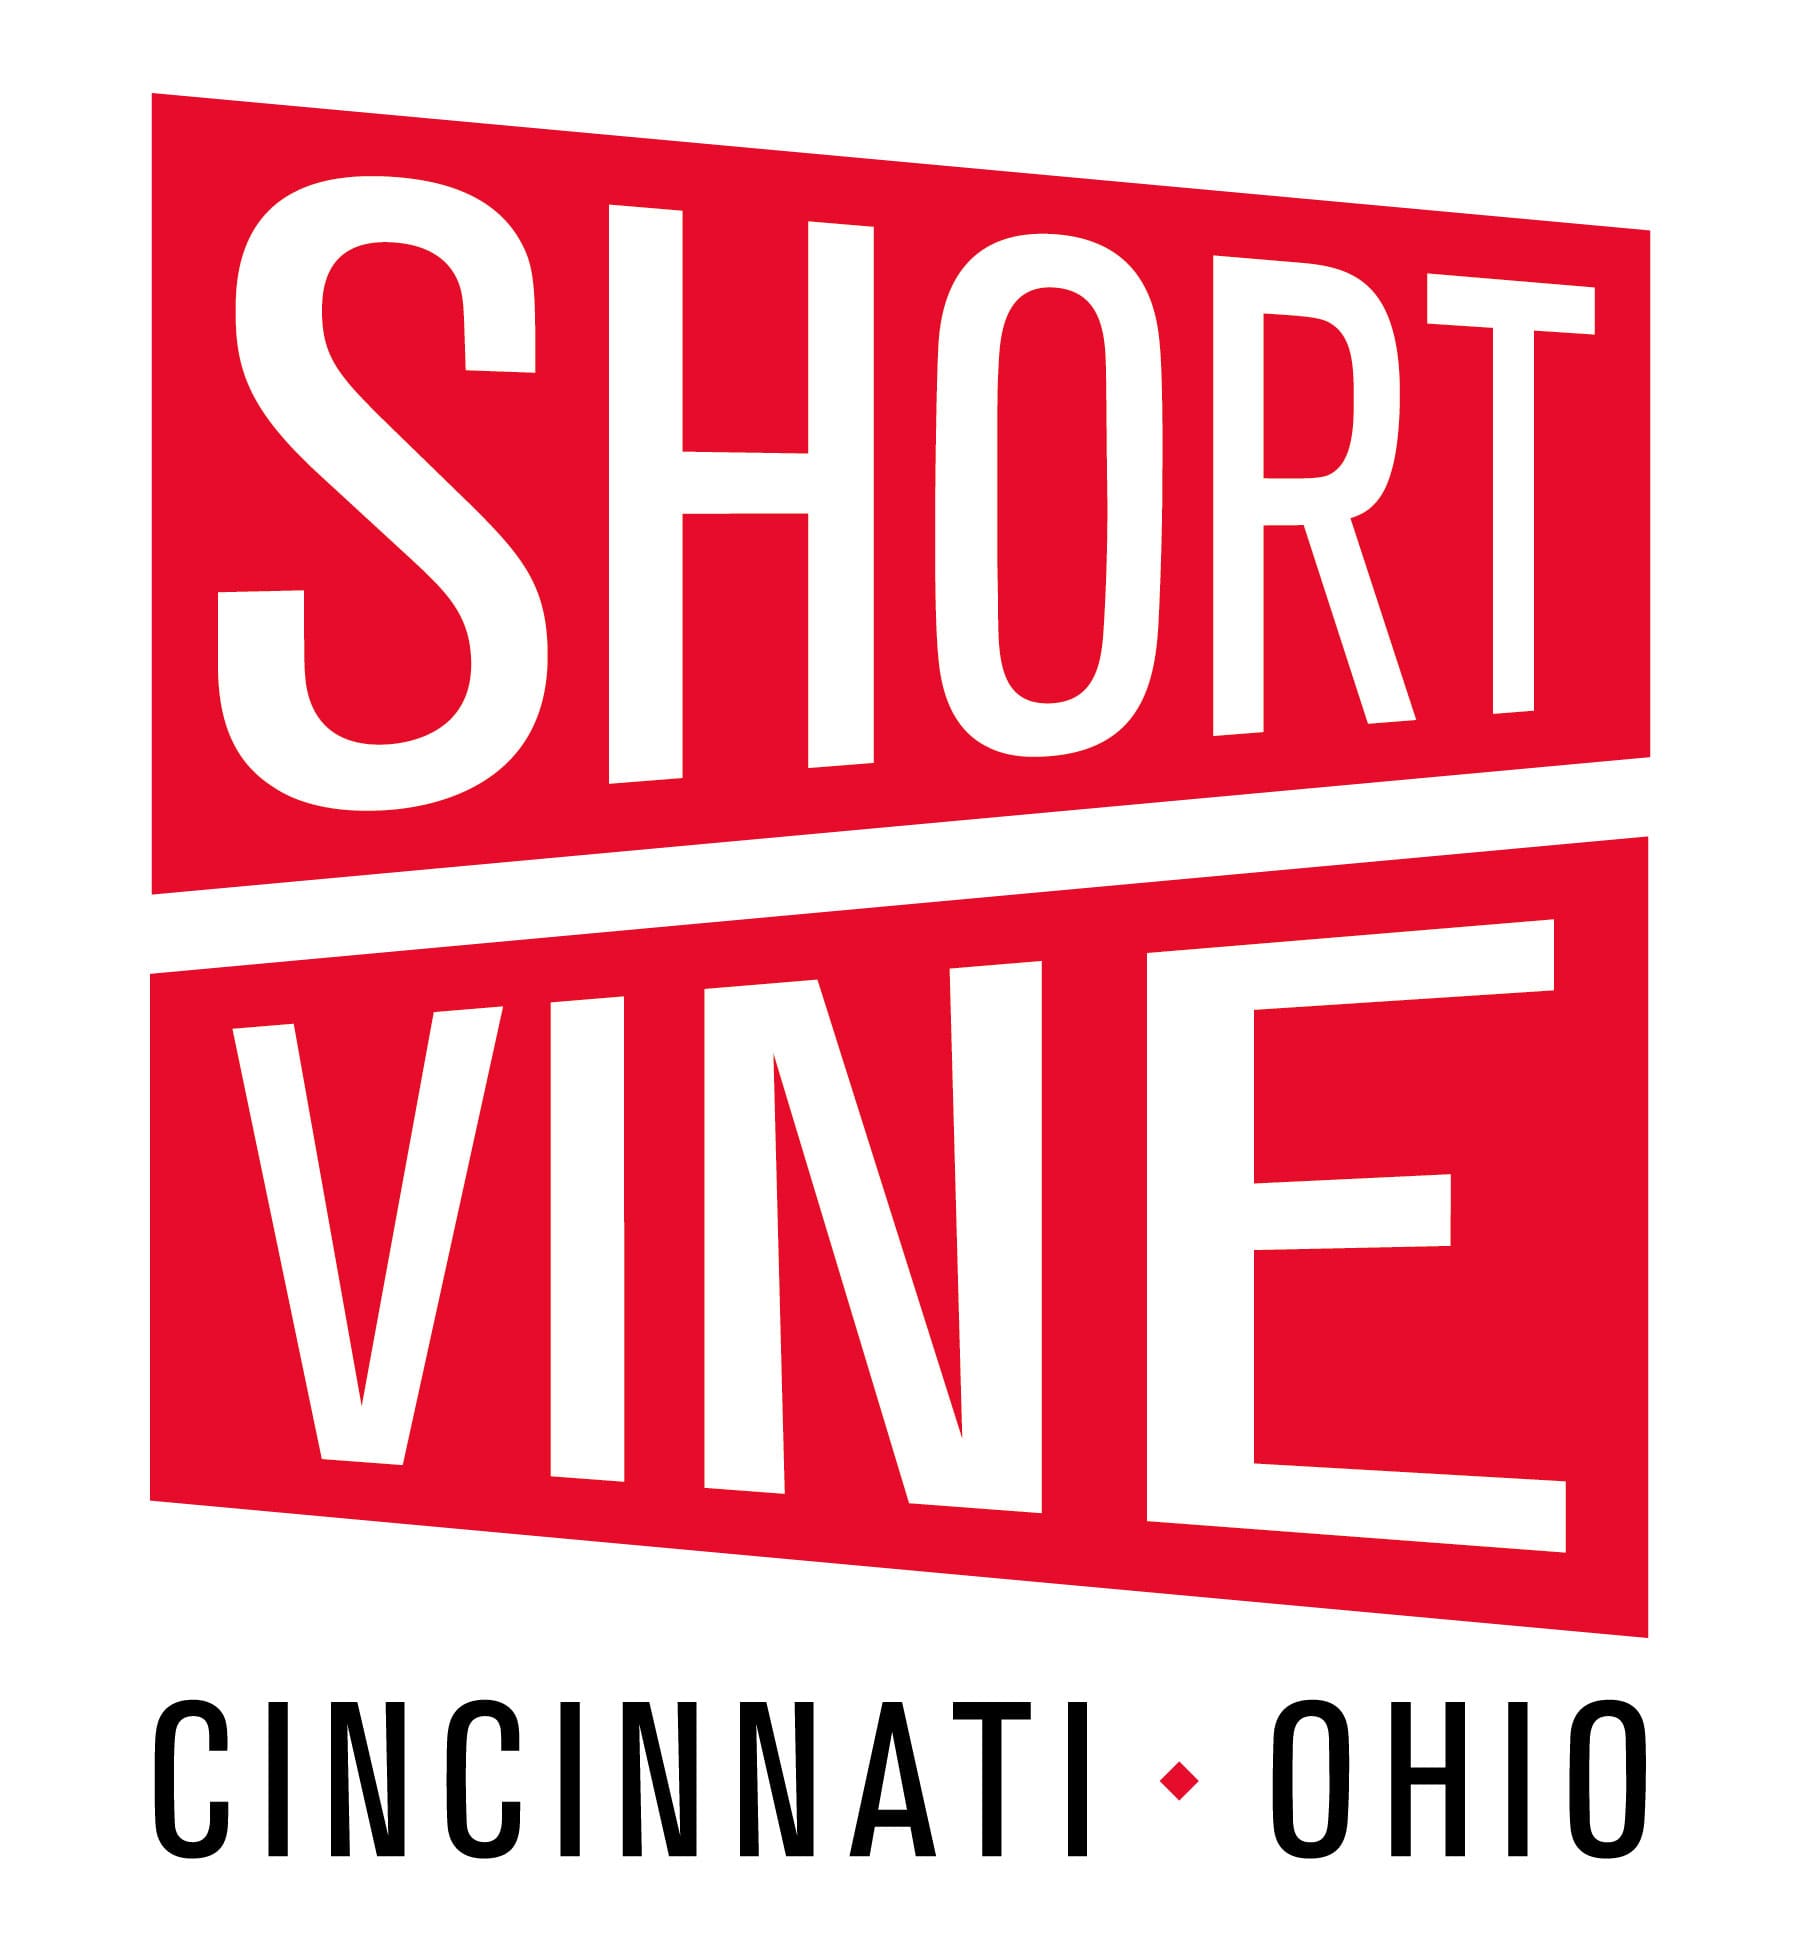 Short Vine - Cincinnati, OH